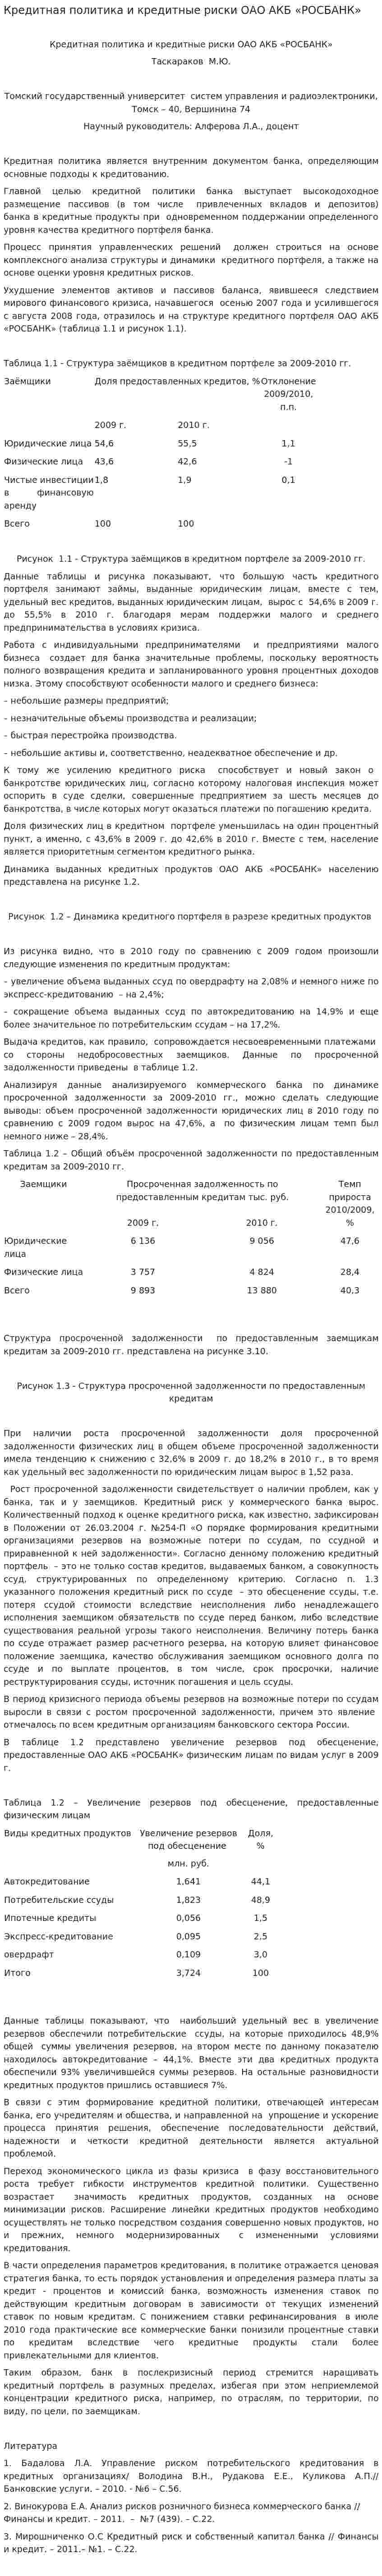 Кредитная политика и кредитные риски ОАО АКБ «РОСБАНК»